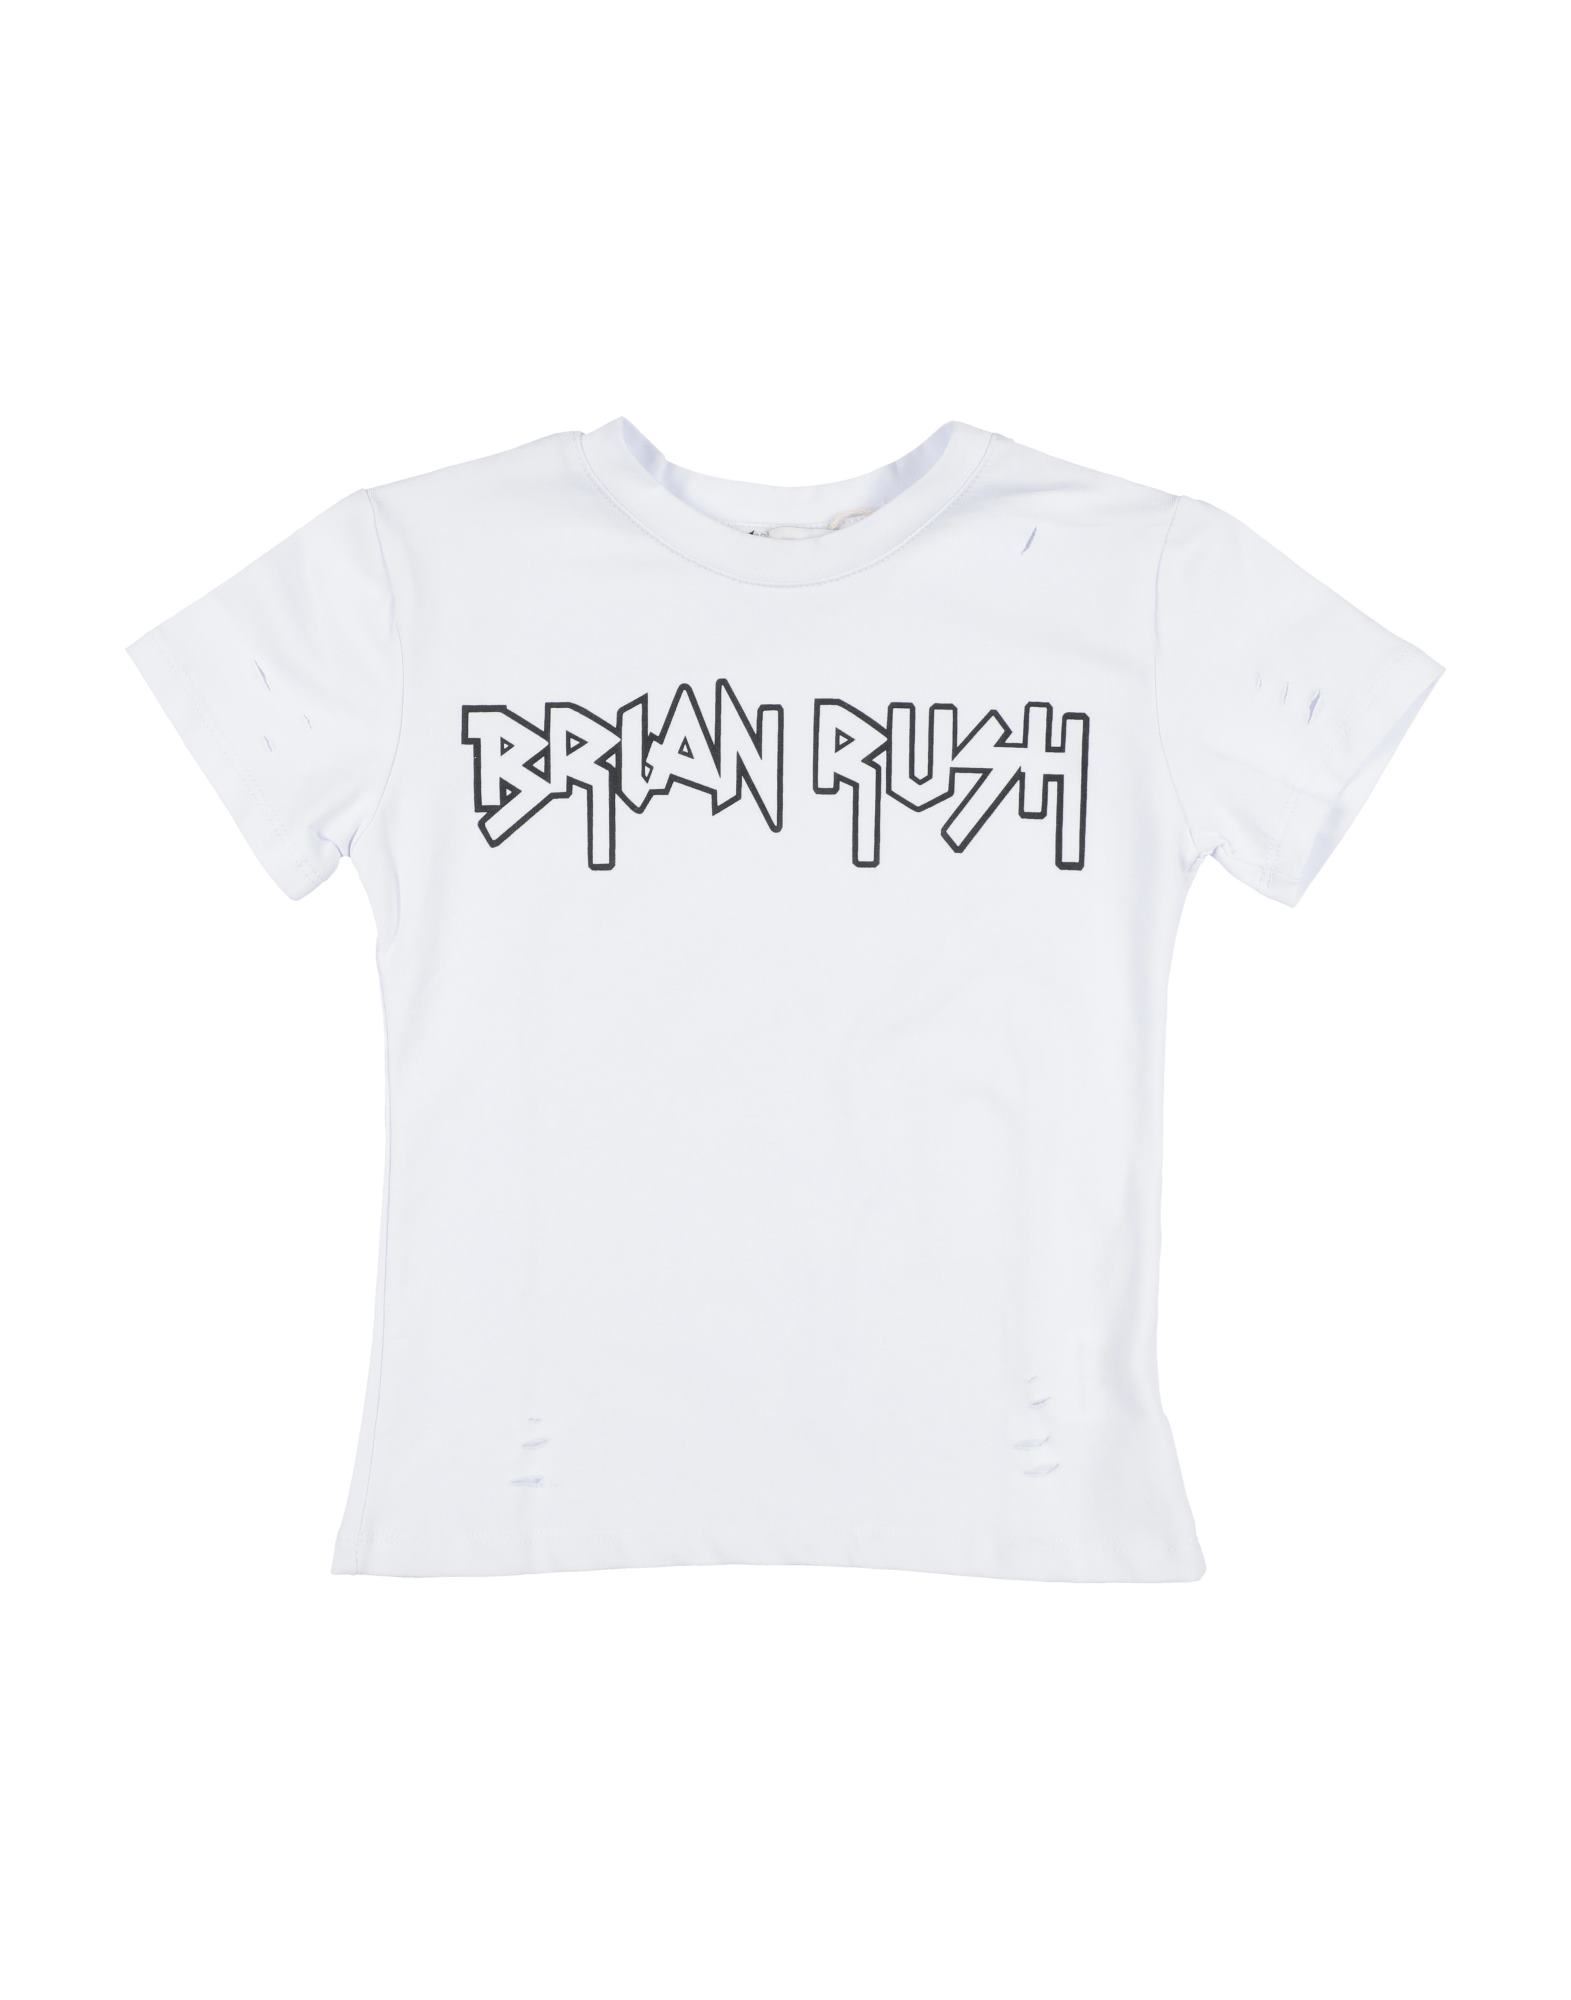 Brian Rush Kids'  T-shirts In White